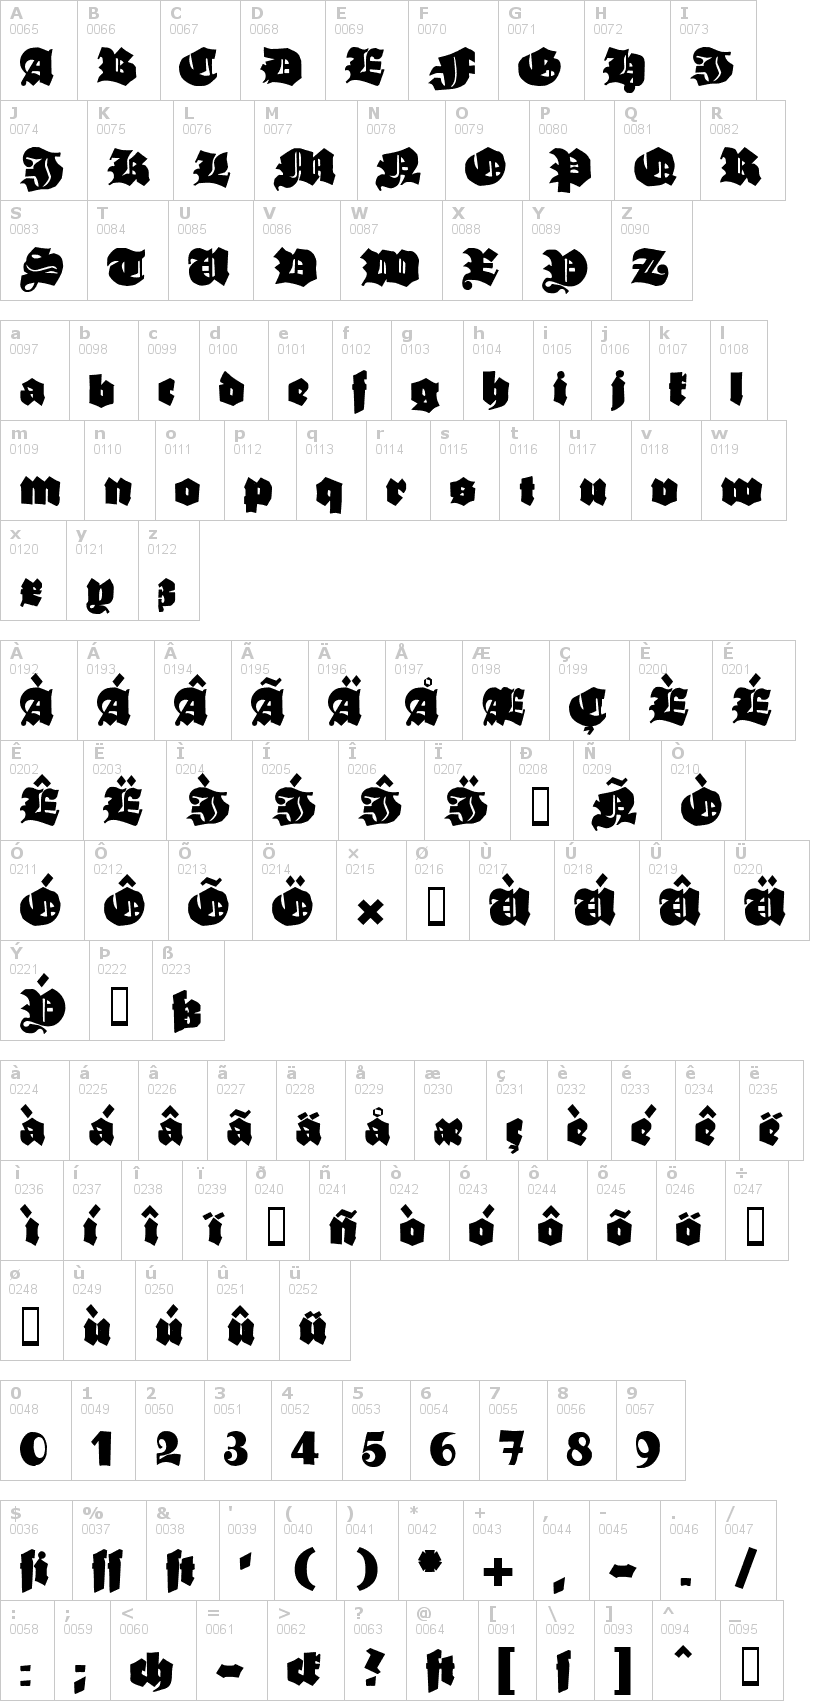 Lettere dell'alfabeto del font ganz-grobe-gotisch con le quali è possibile realizzare adesivi prespaziati